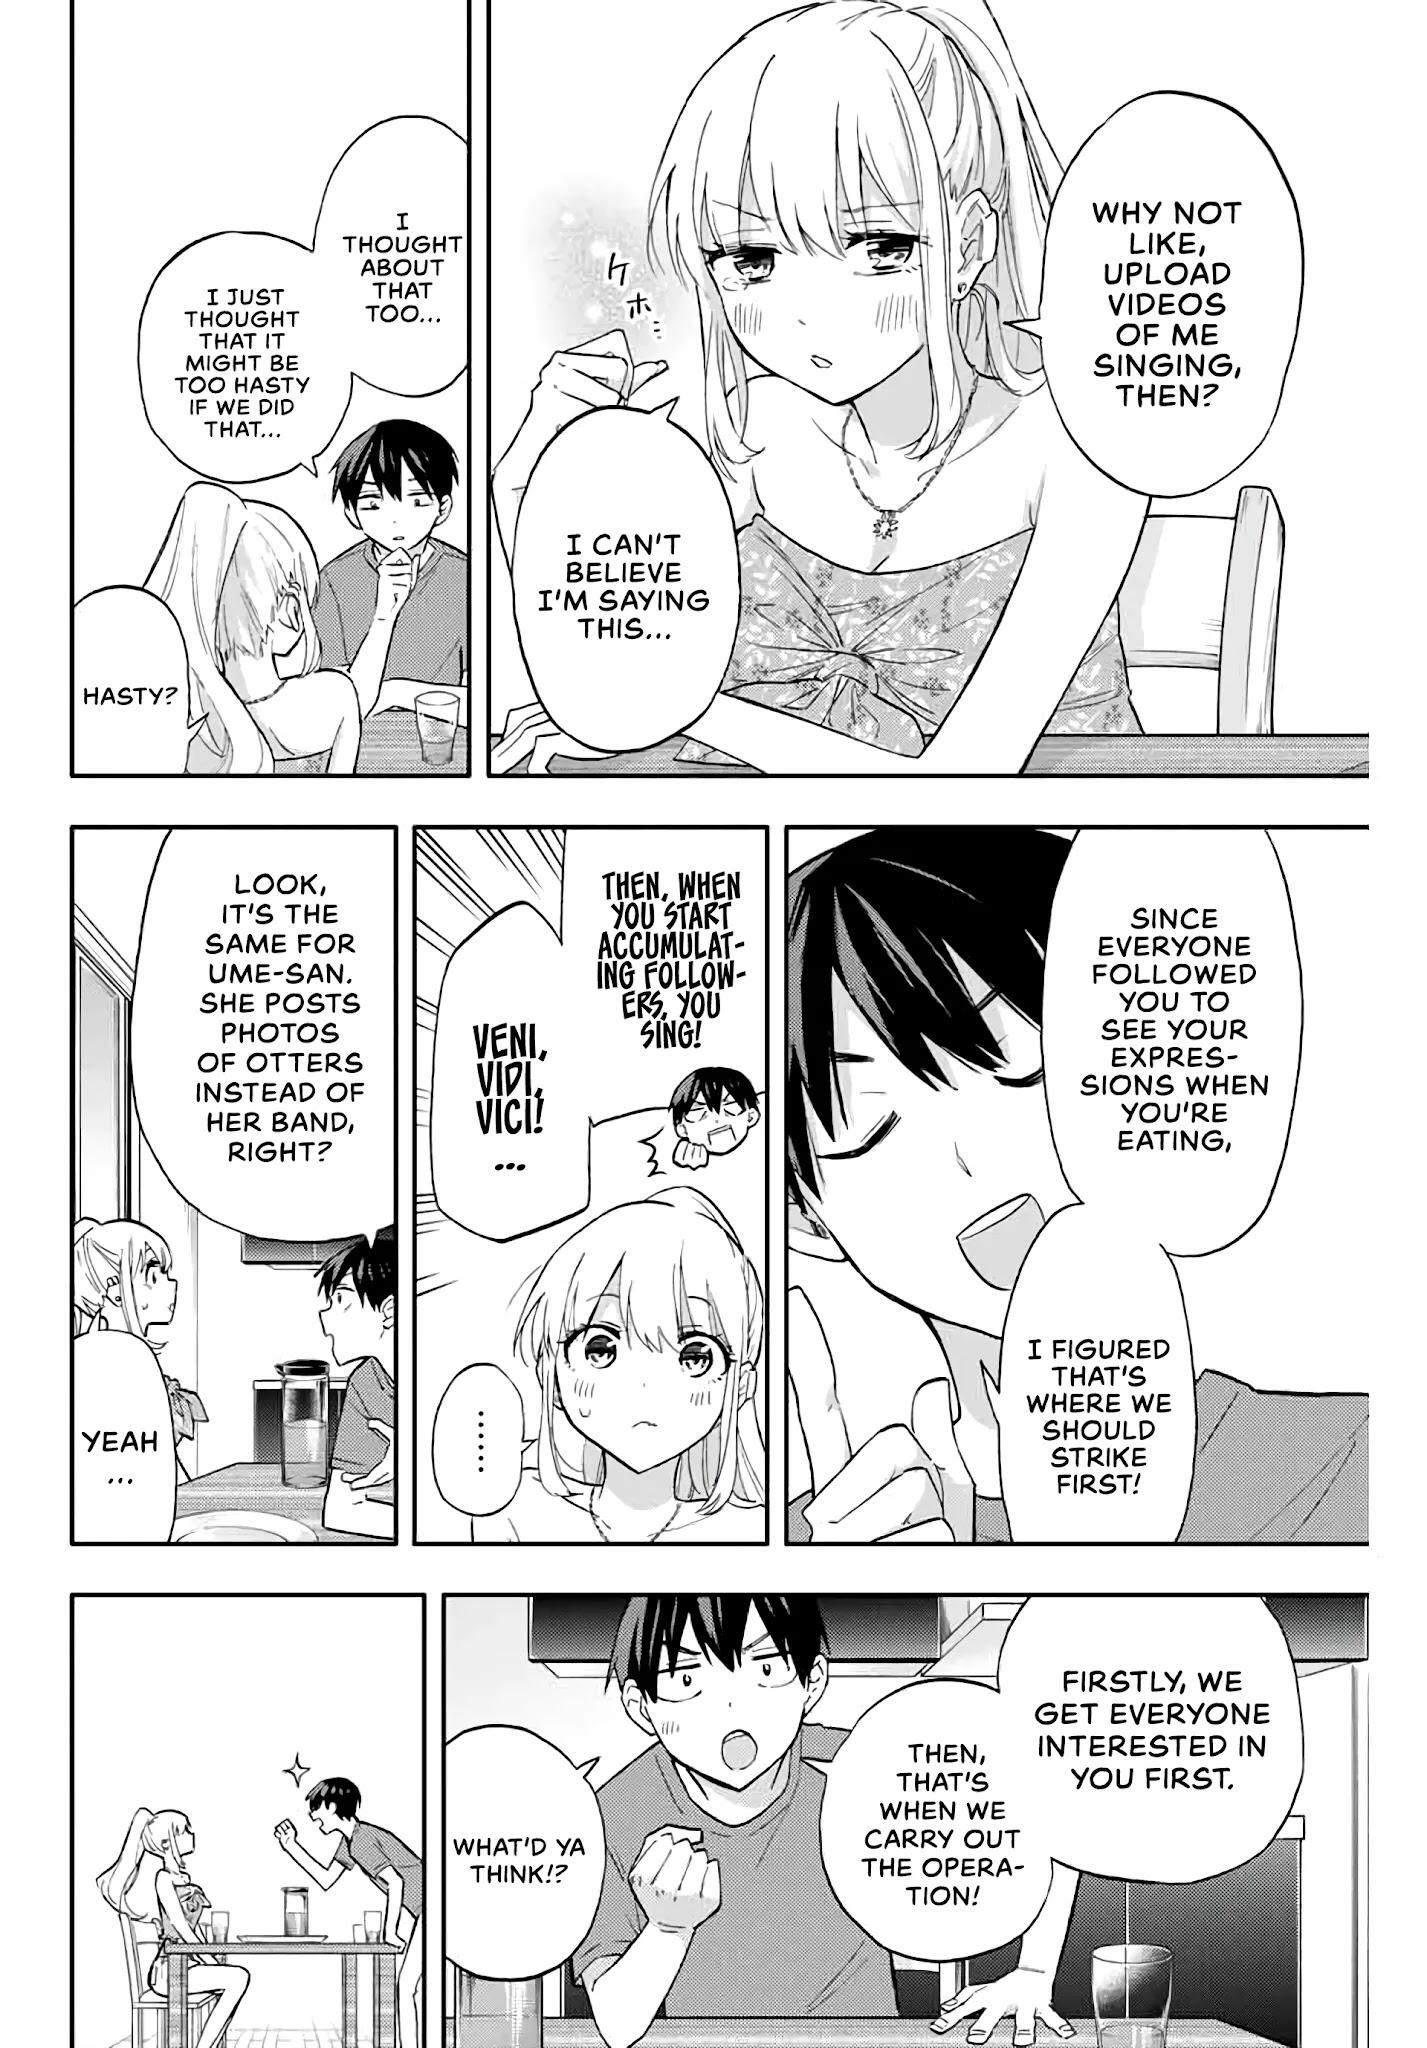 Hanazono Twins Chapter 36: Grand Operation To Get More Followers! page 12 - Mangakakalots.com